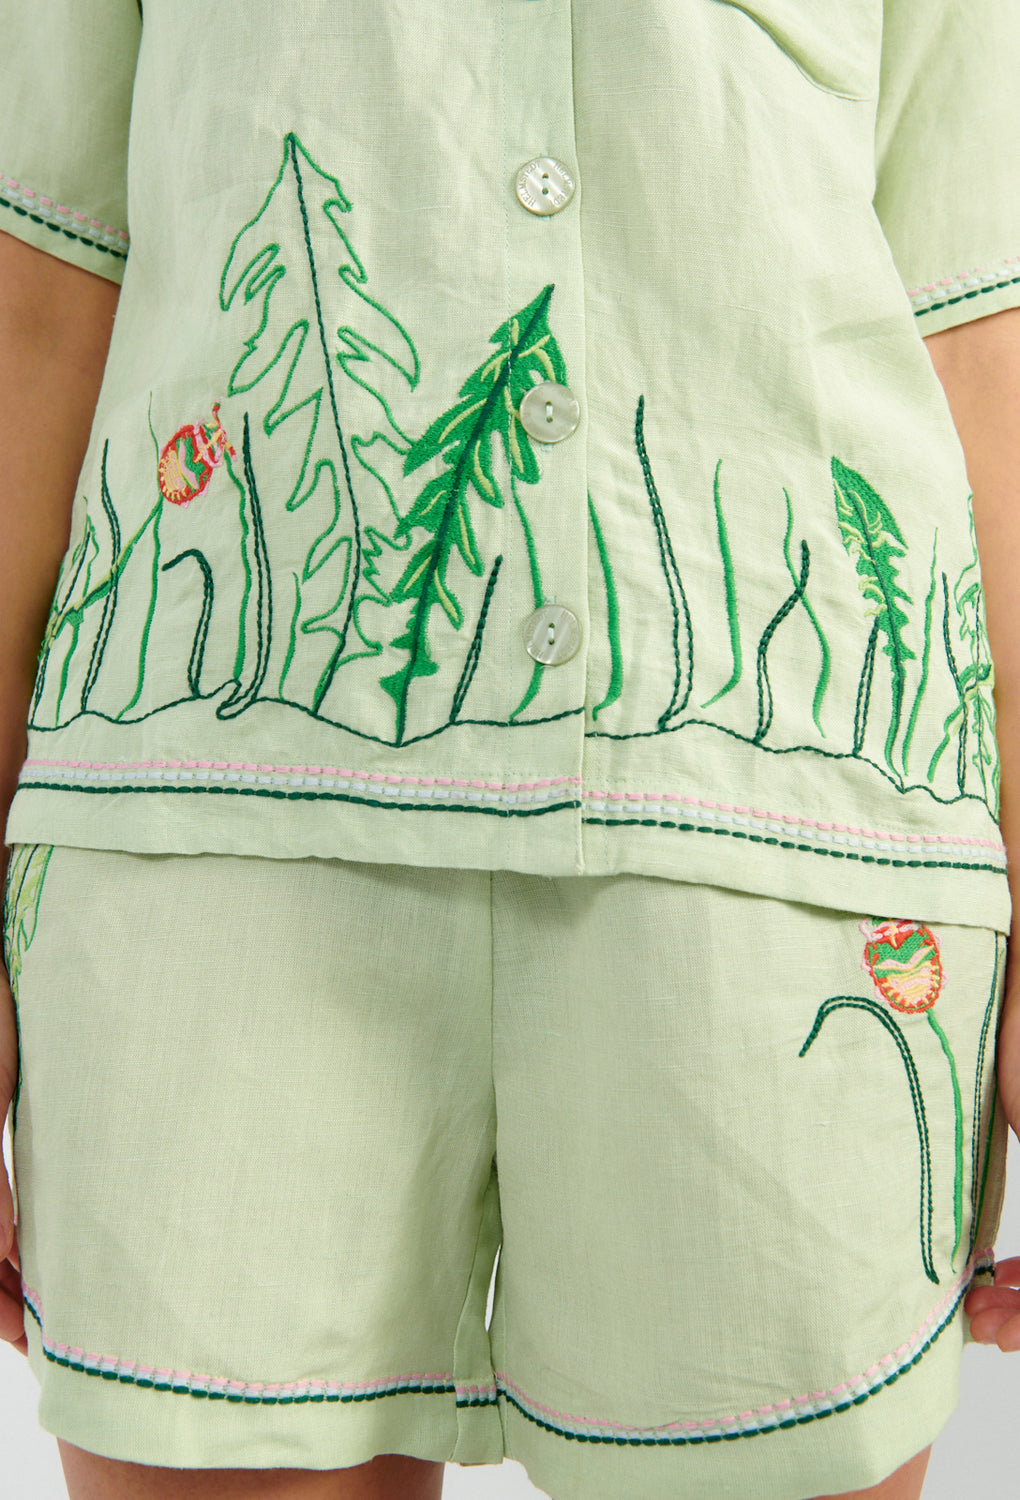 Helmstedt Aleta Shirt mint green-Helmstedt embroidered shirt green-Helmstedt mushroom shirt-Idun-St. Paul